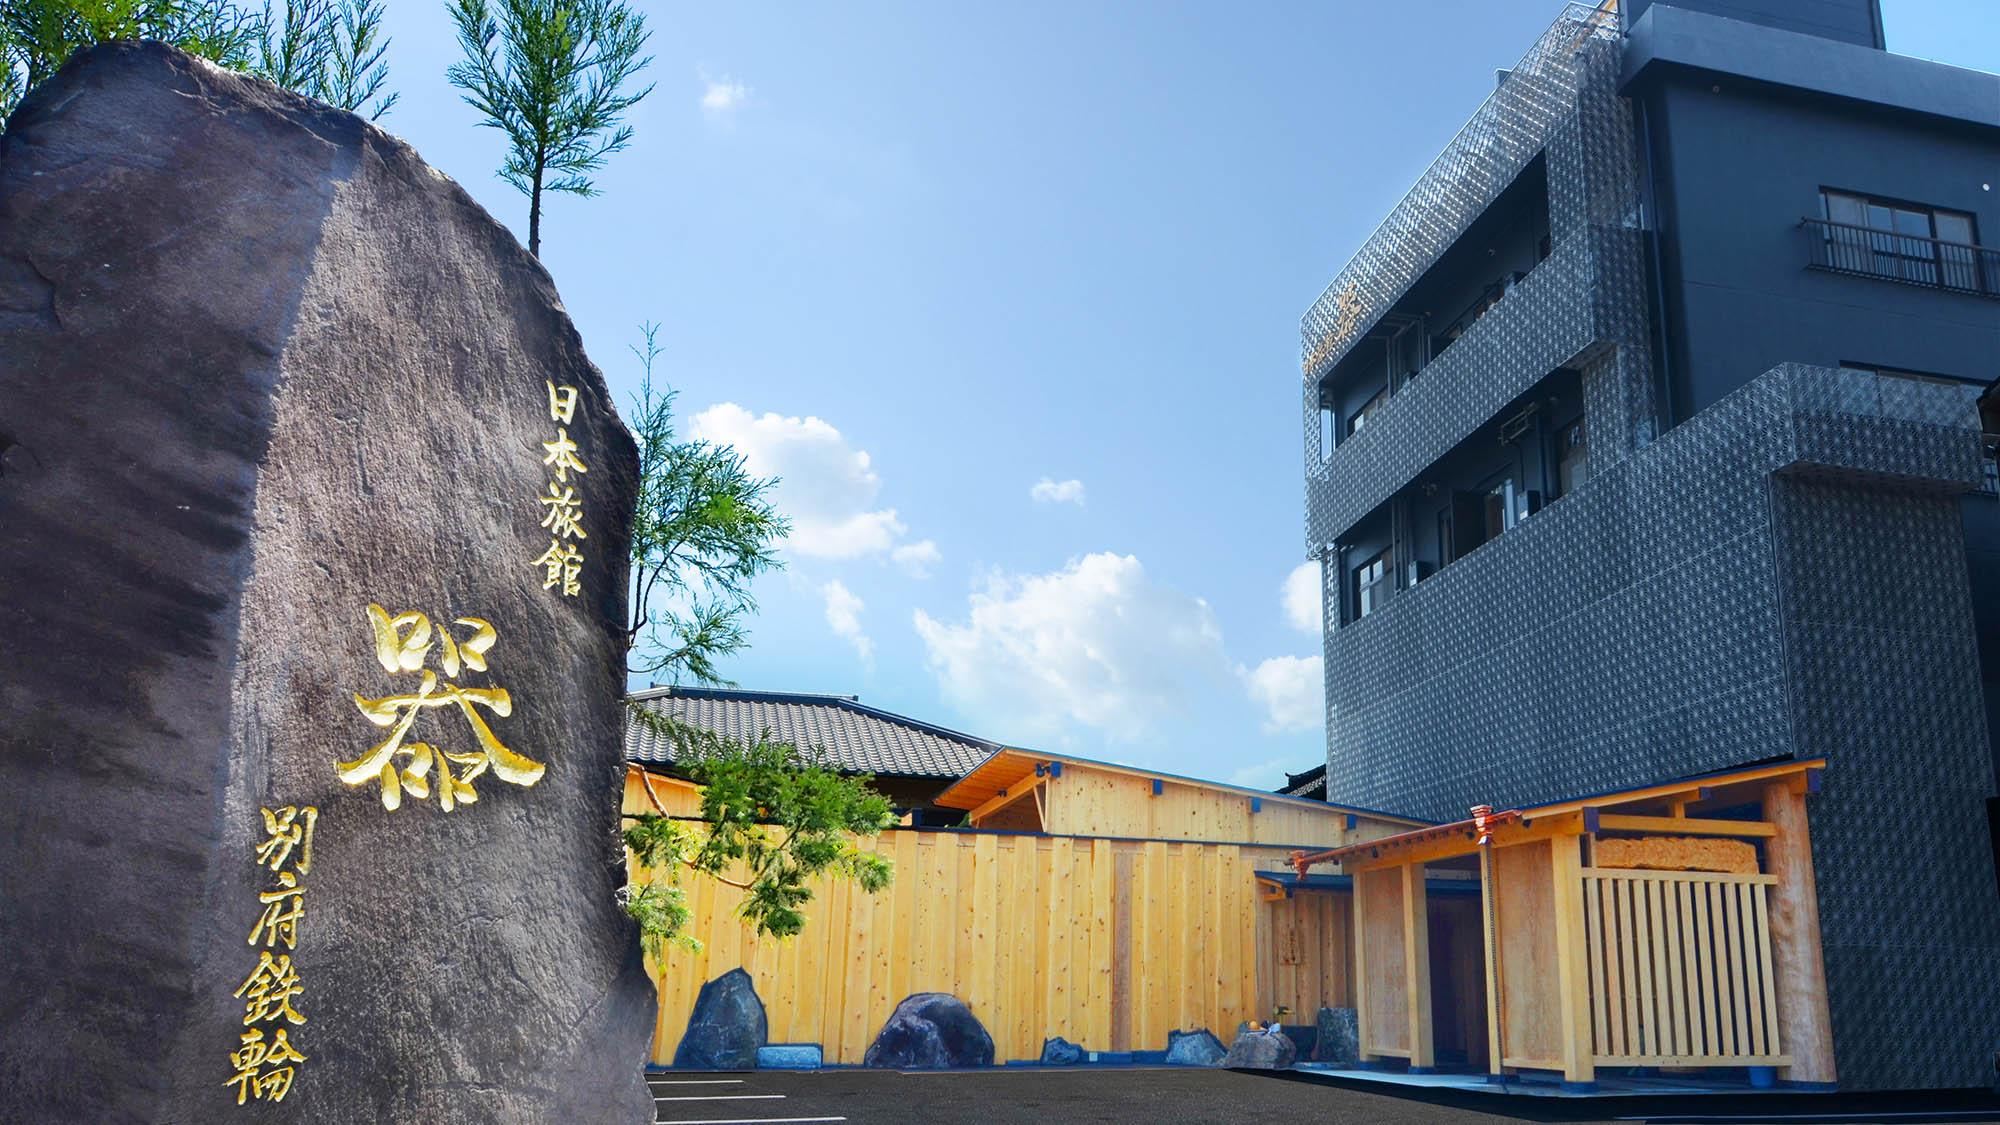 ・【平成30年オープン】巨石に彫り込んだ「日本旅館 器 別府鉄輪」の看板を目印にお越し下さい。